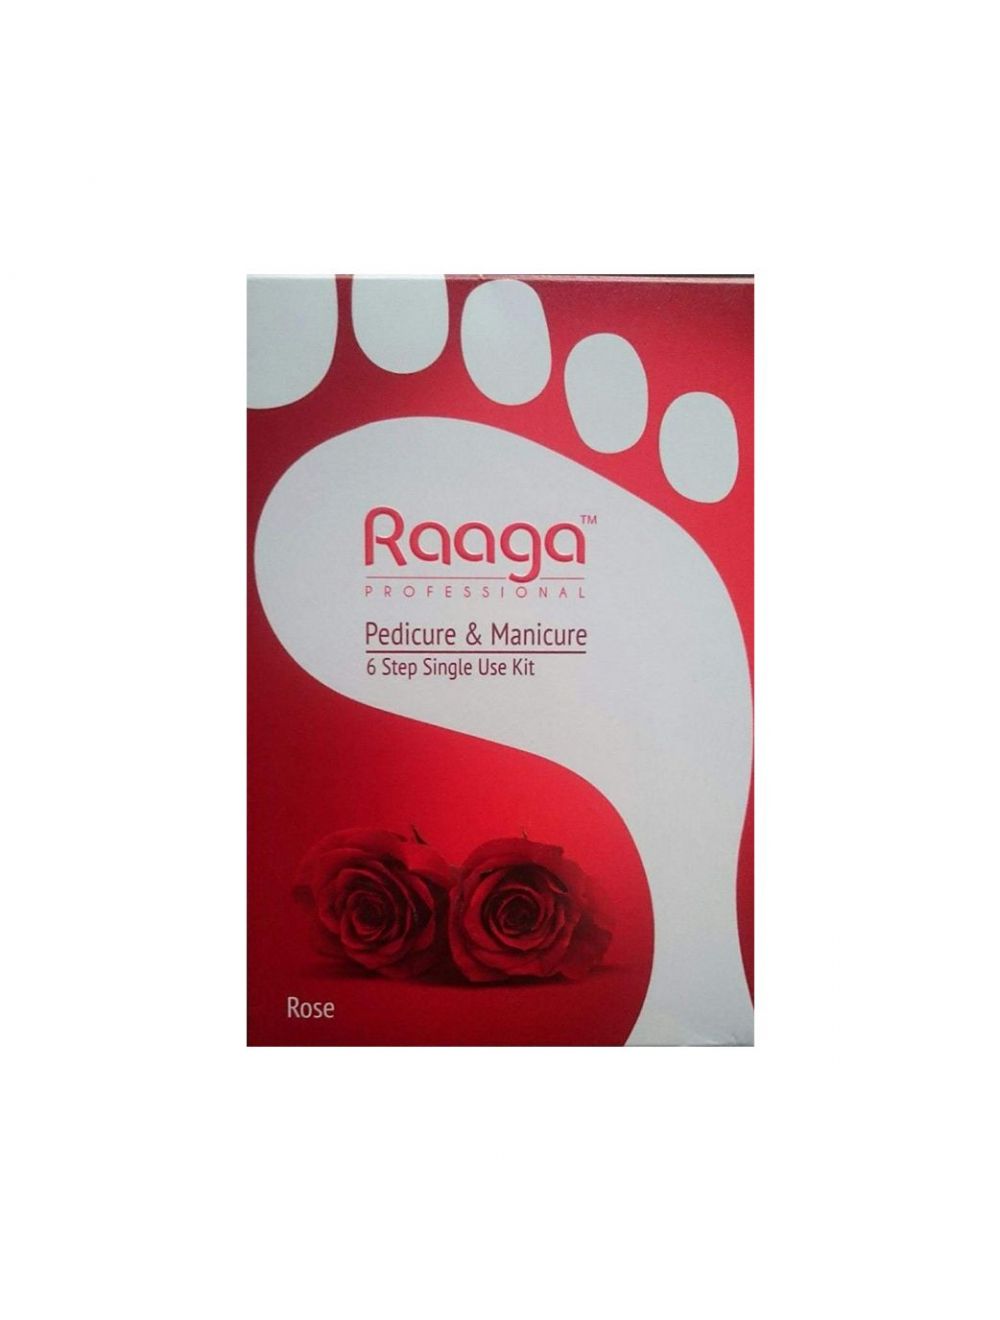 Raaga Professional Rose Pedicure & Manicure 6 Step Single Use Kit